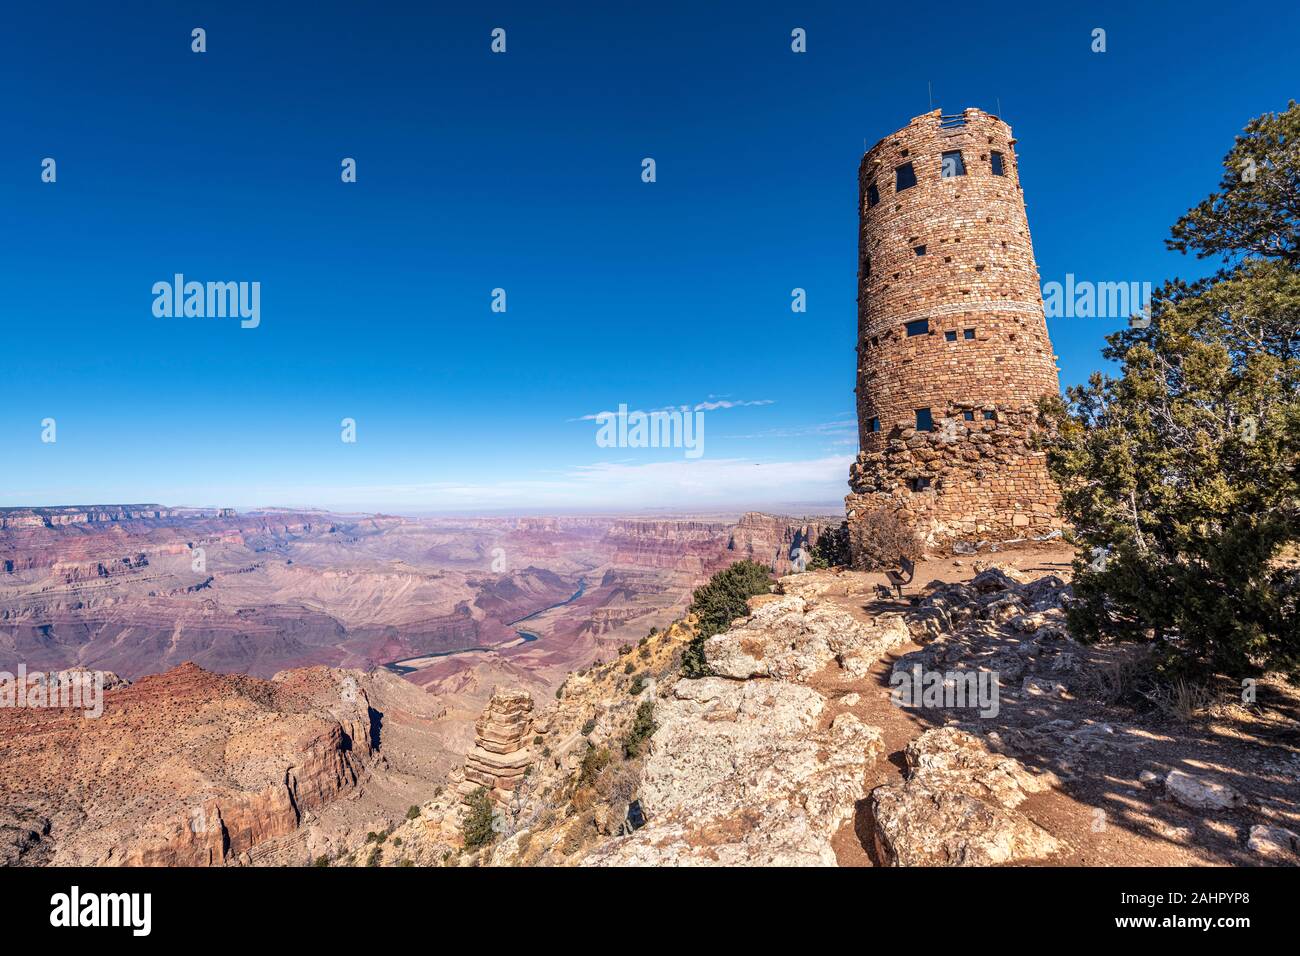 Una vista panorámica de la zona montañosa del desierto Grand Canyon View Atalaya enmarcada contra un cielo azul. Foto de stock